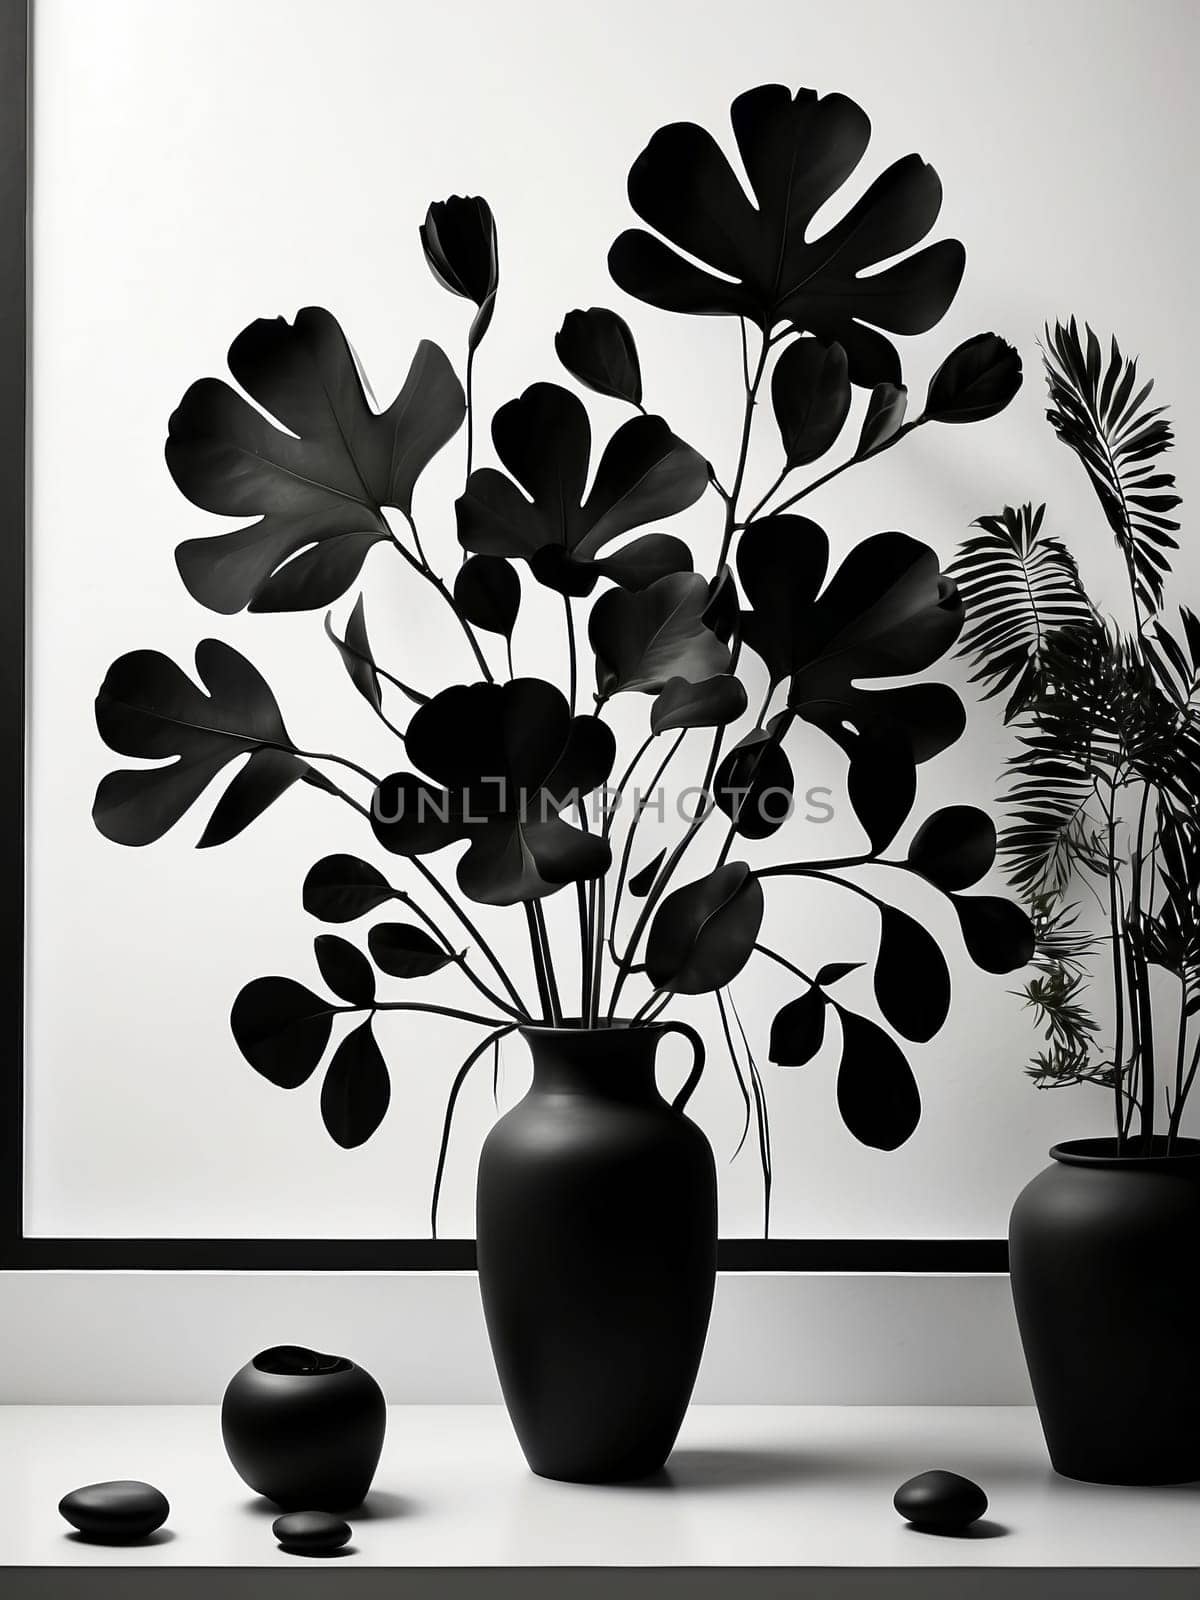 Vase modern art by applesstock